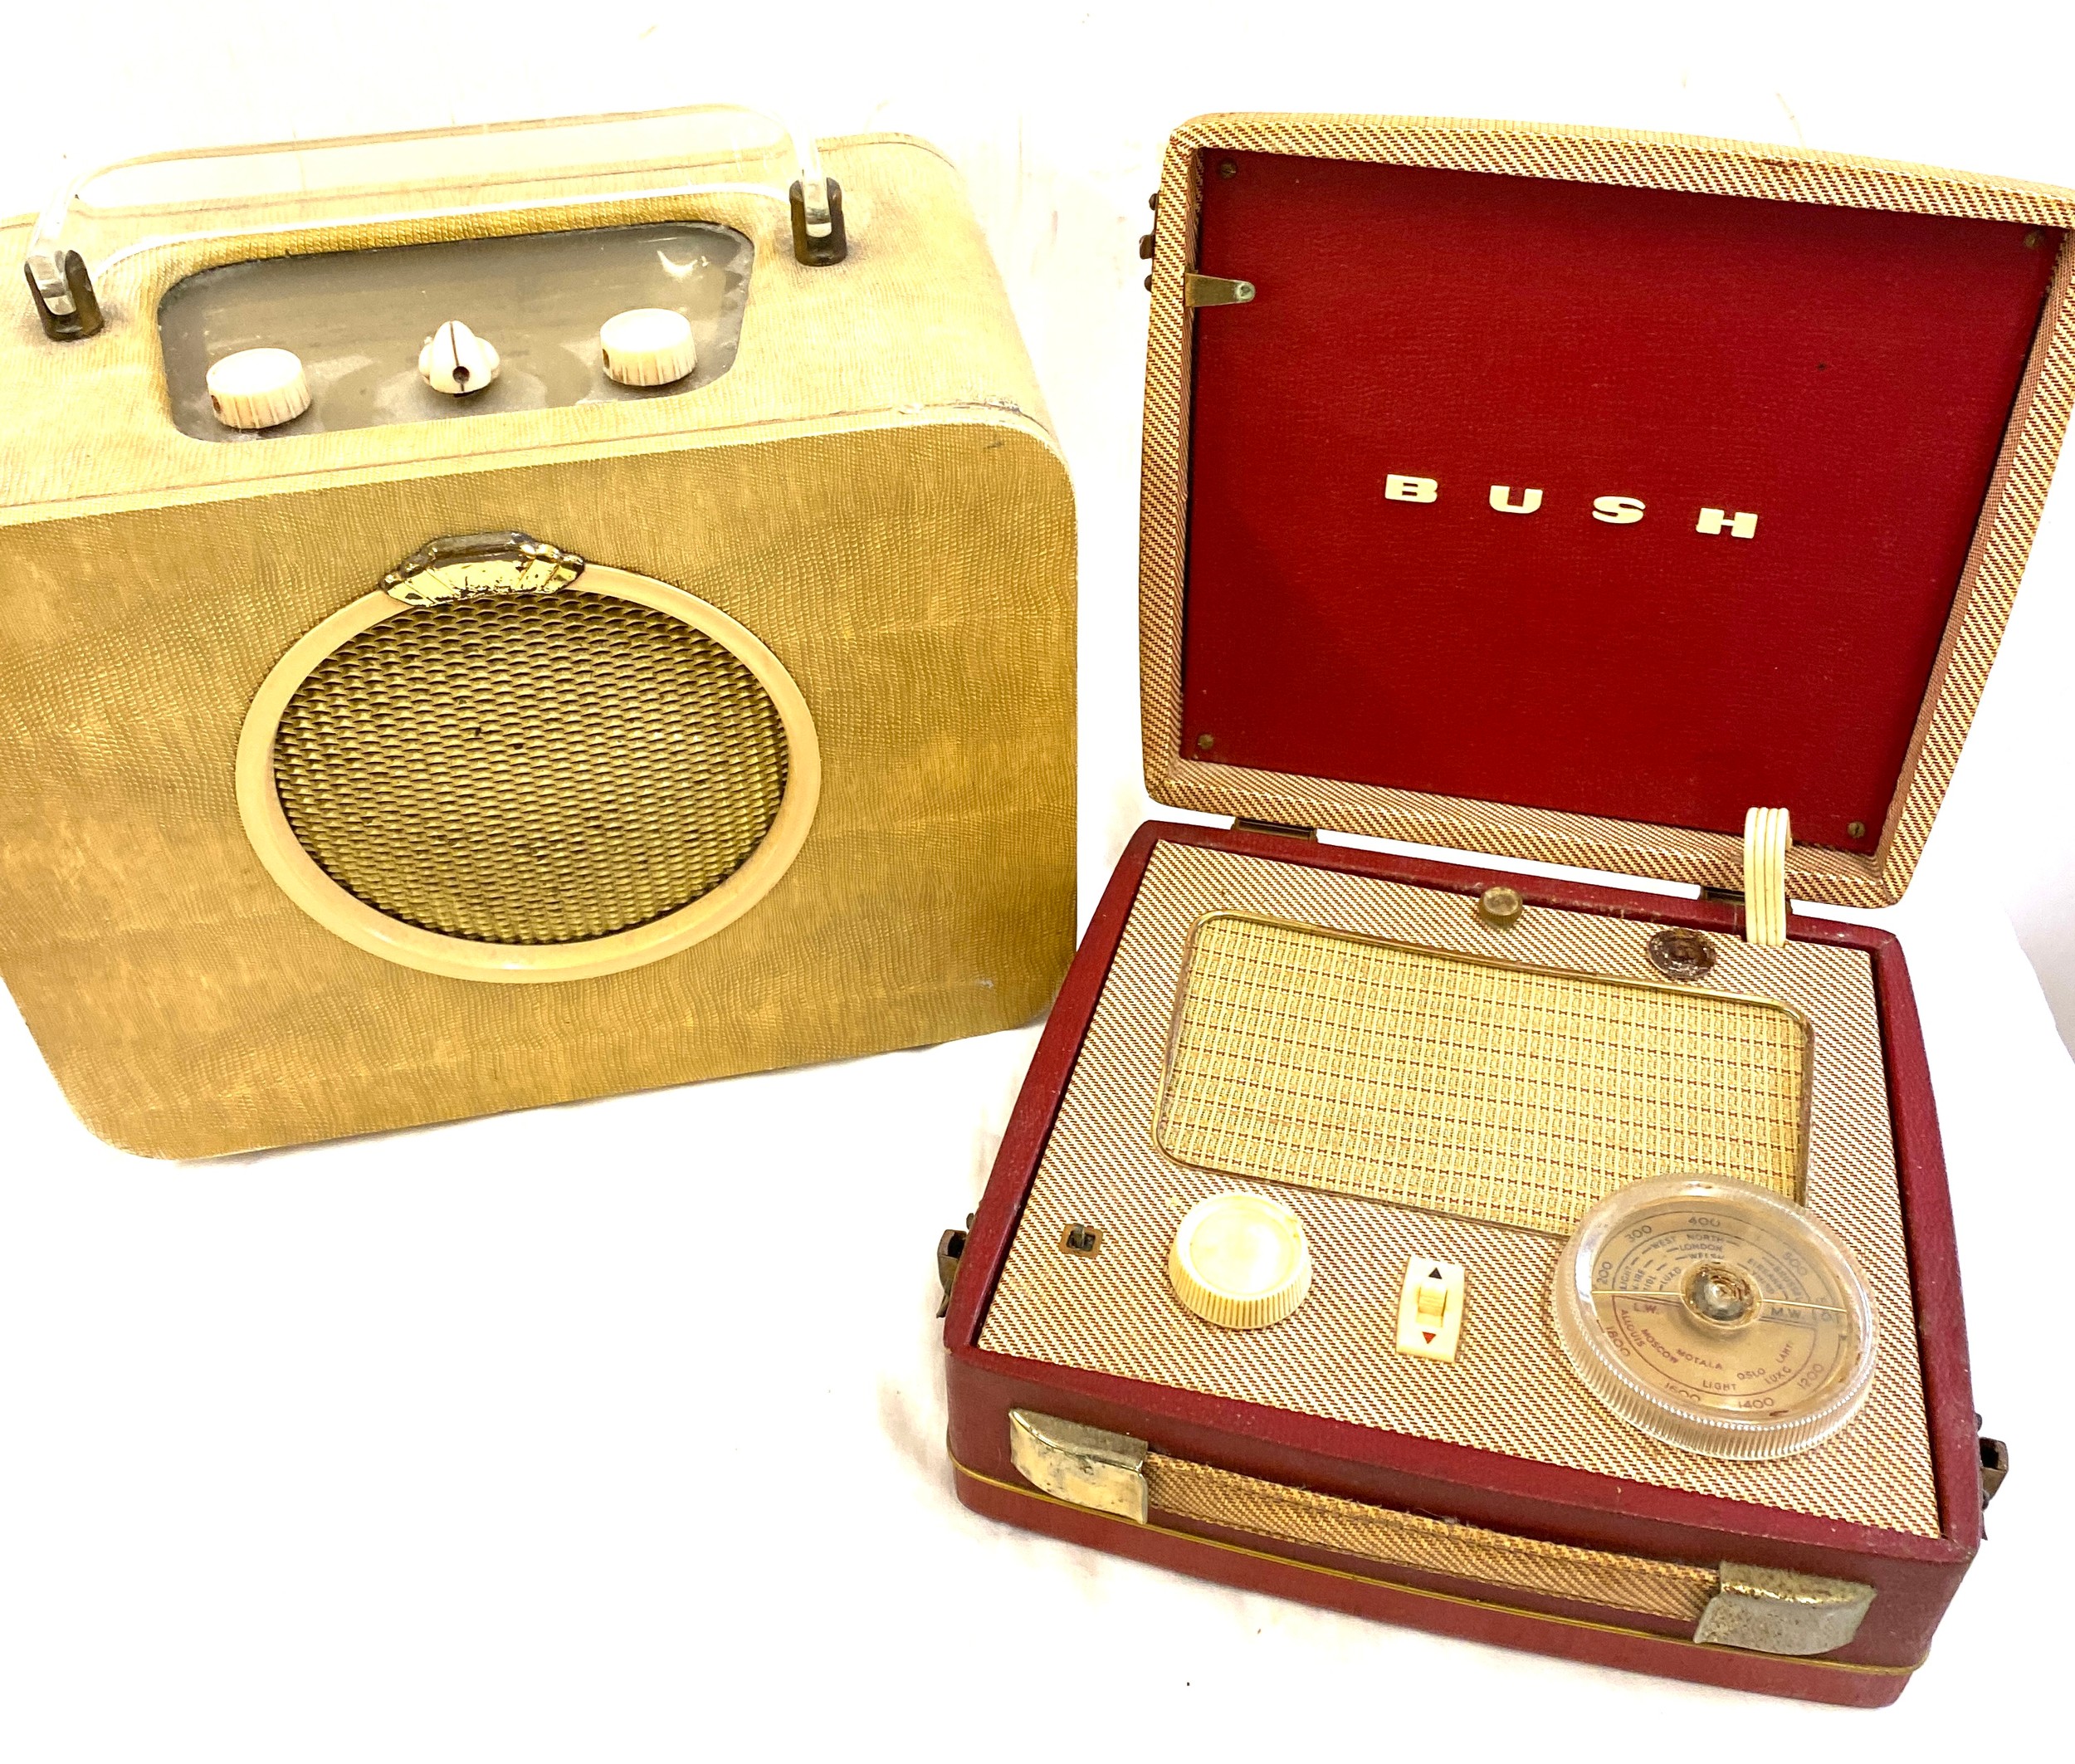 Two retro sky queen radios